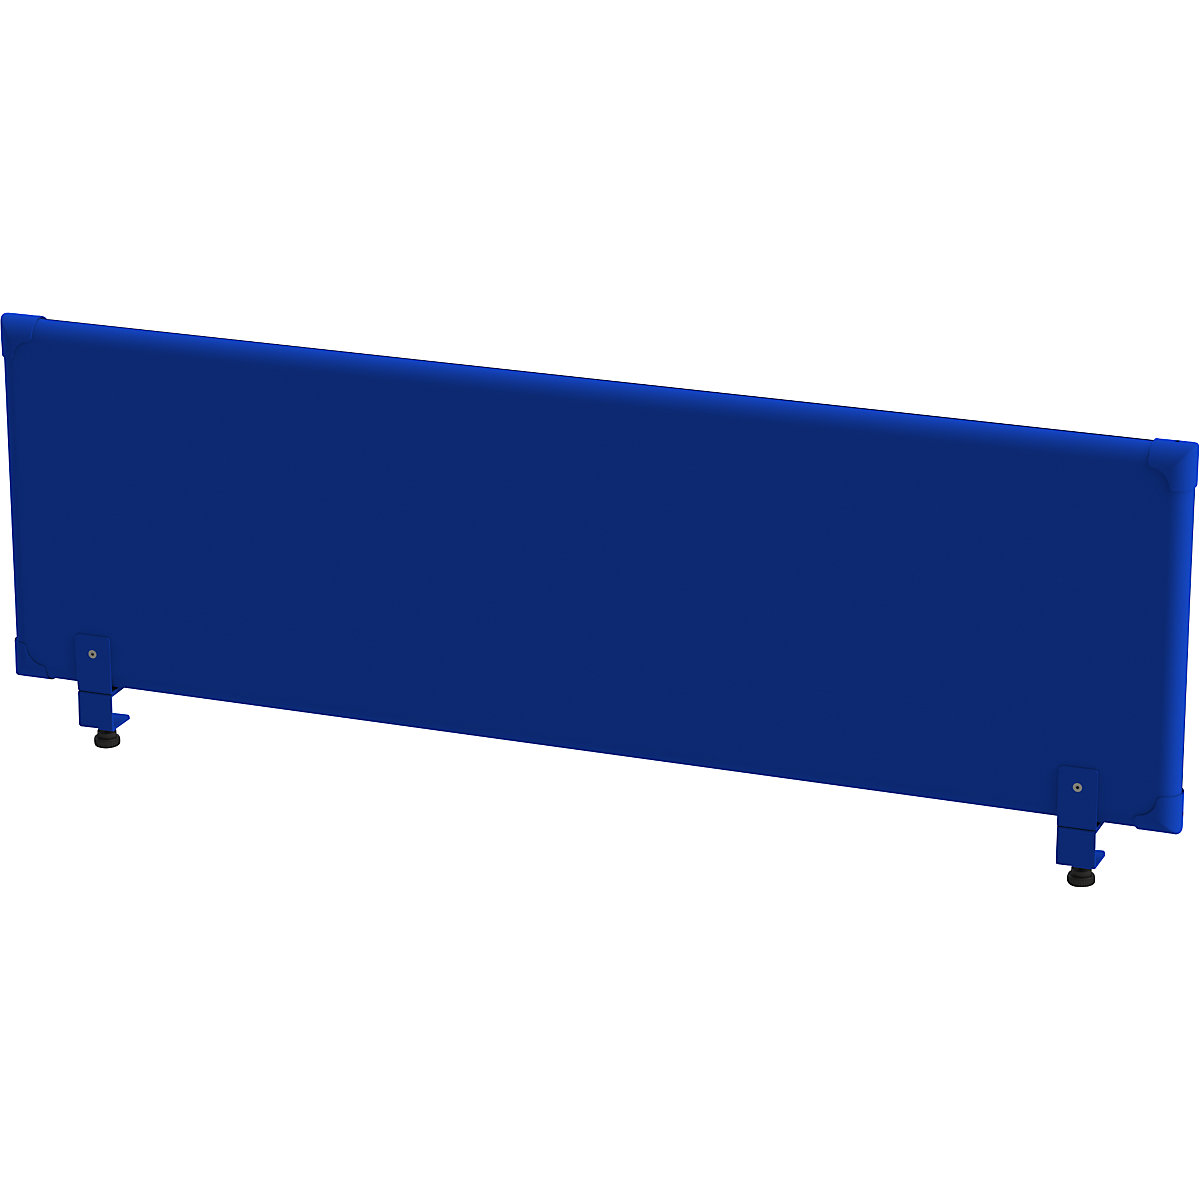 EUROKRAFTpro Akustik-Tischaufsatz-Paneel, Höhe 450 mm, Breite 1600 mm, blau